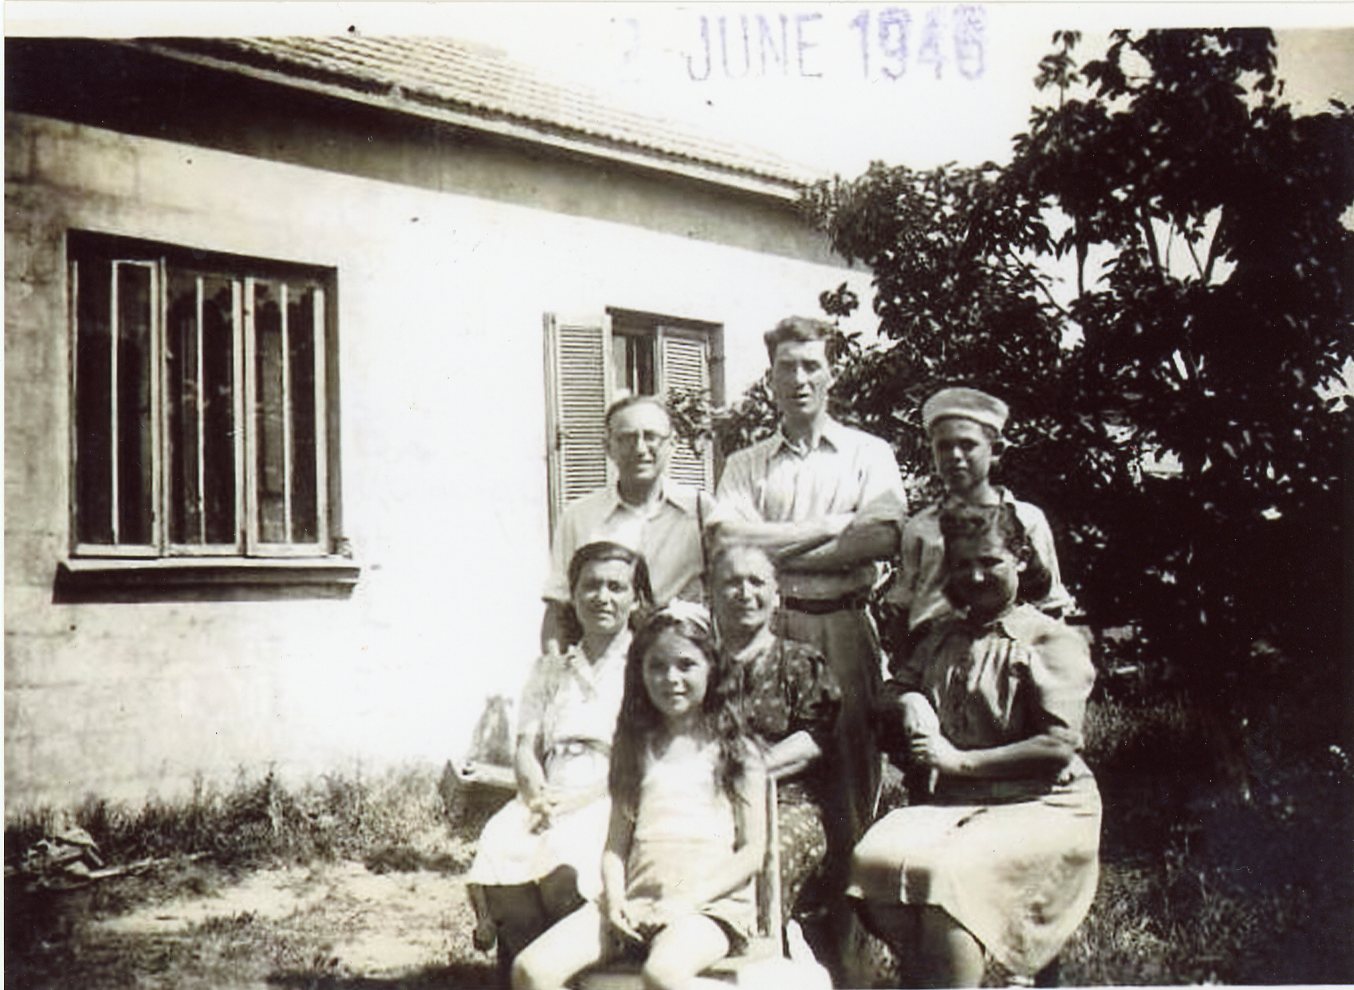 1946, עומדים משמאל: שמואל קלדור, מיכאל אלטשולר, אברהם אלטשולר. יושבות משמאל: טובה אלטשולר, יפה אייכל, רחל קלדור. הילדה בקדמת התמונה אורה אלטשולר. על רקע הבית ברחוב הרצל, רעננה.